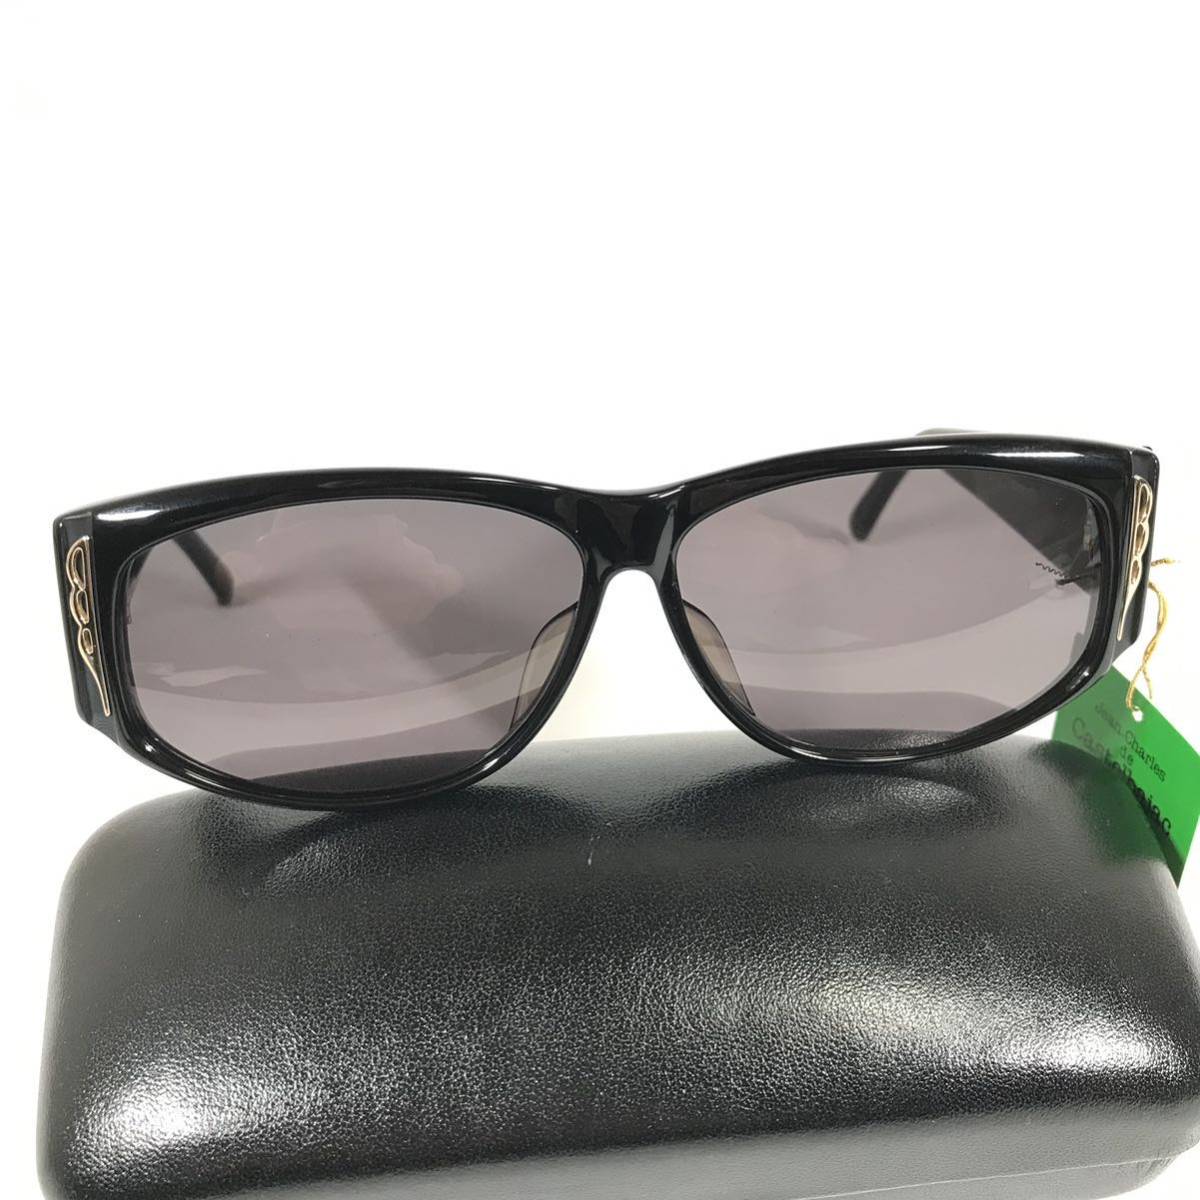  не использовался товар [ Castelbajac ] подлинный товар Castelbajac солнцезащитные очки JC Logo 9003 серый цвет серия × чёрный мужской женский обычная цена 2.8 десять тысяч иен стоимость доставки 520 иен 1